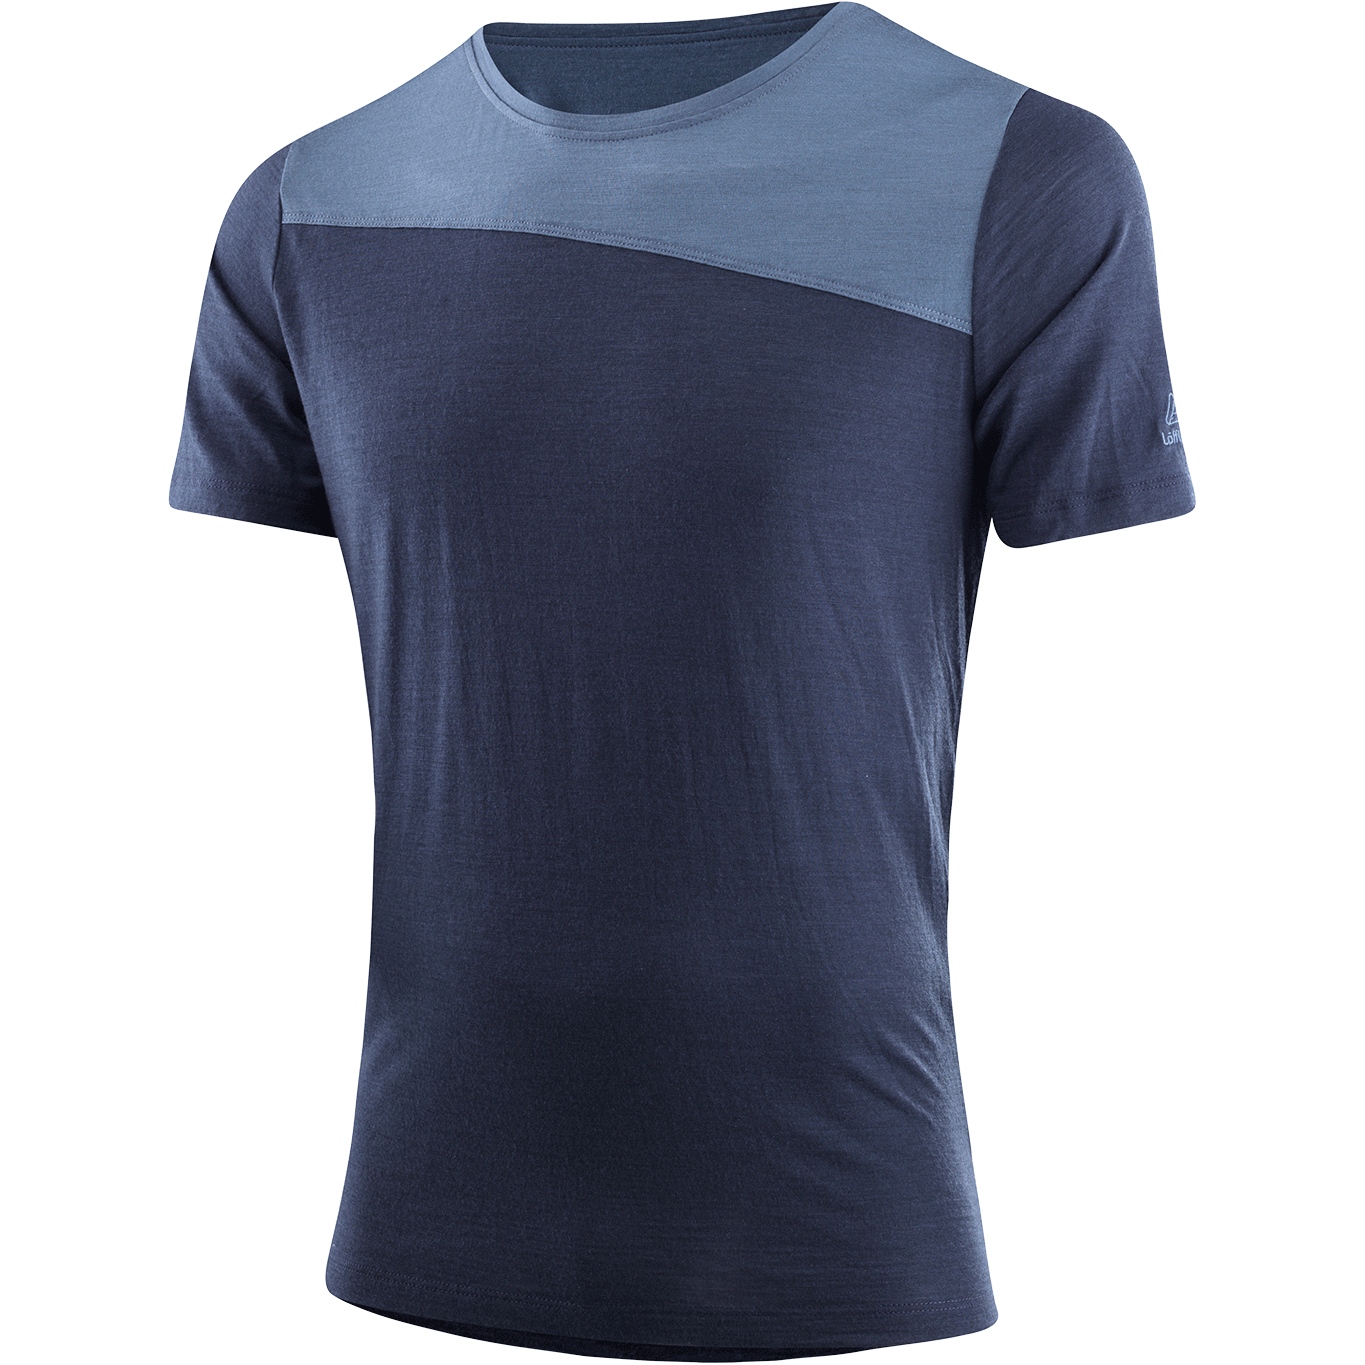 Produktbild von Löffler Merino-Tencel™ Blockshirt Herren - dunkelblau 495